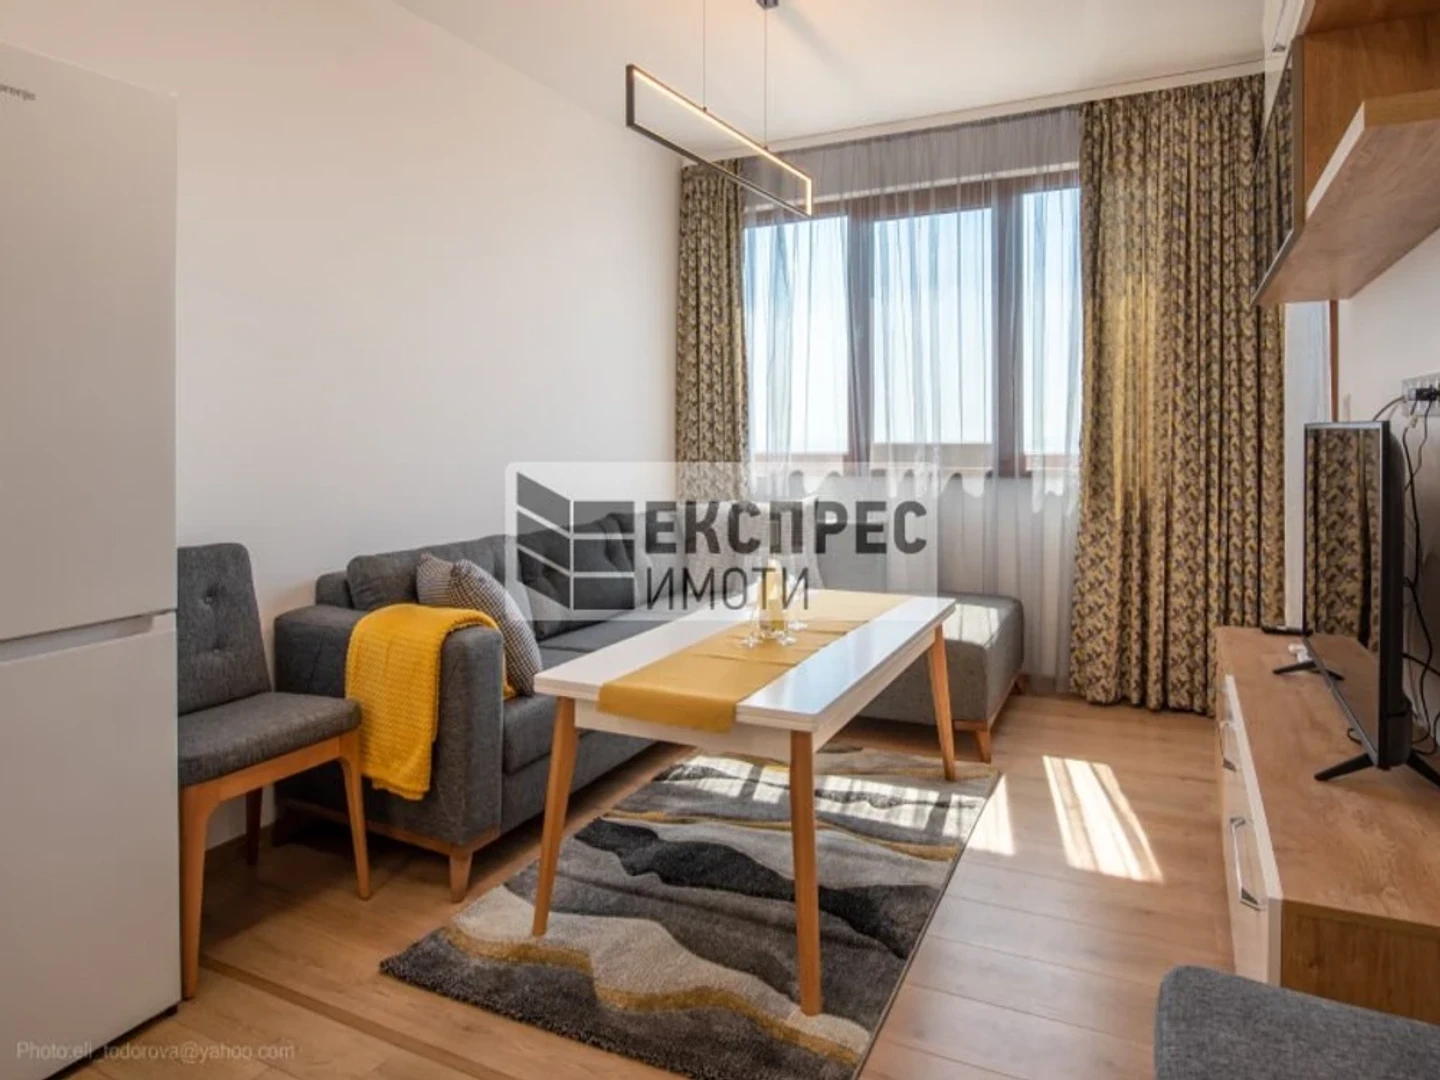 Alojamento com 2 quartos em Varna